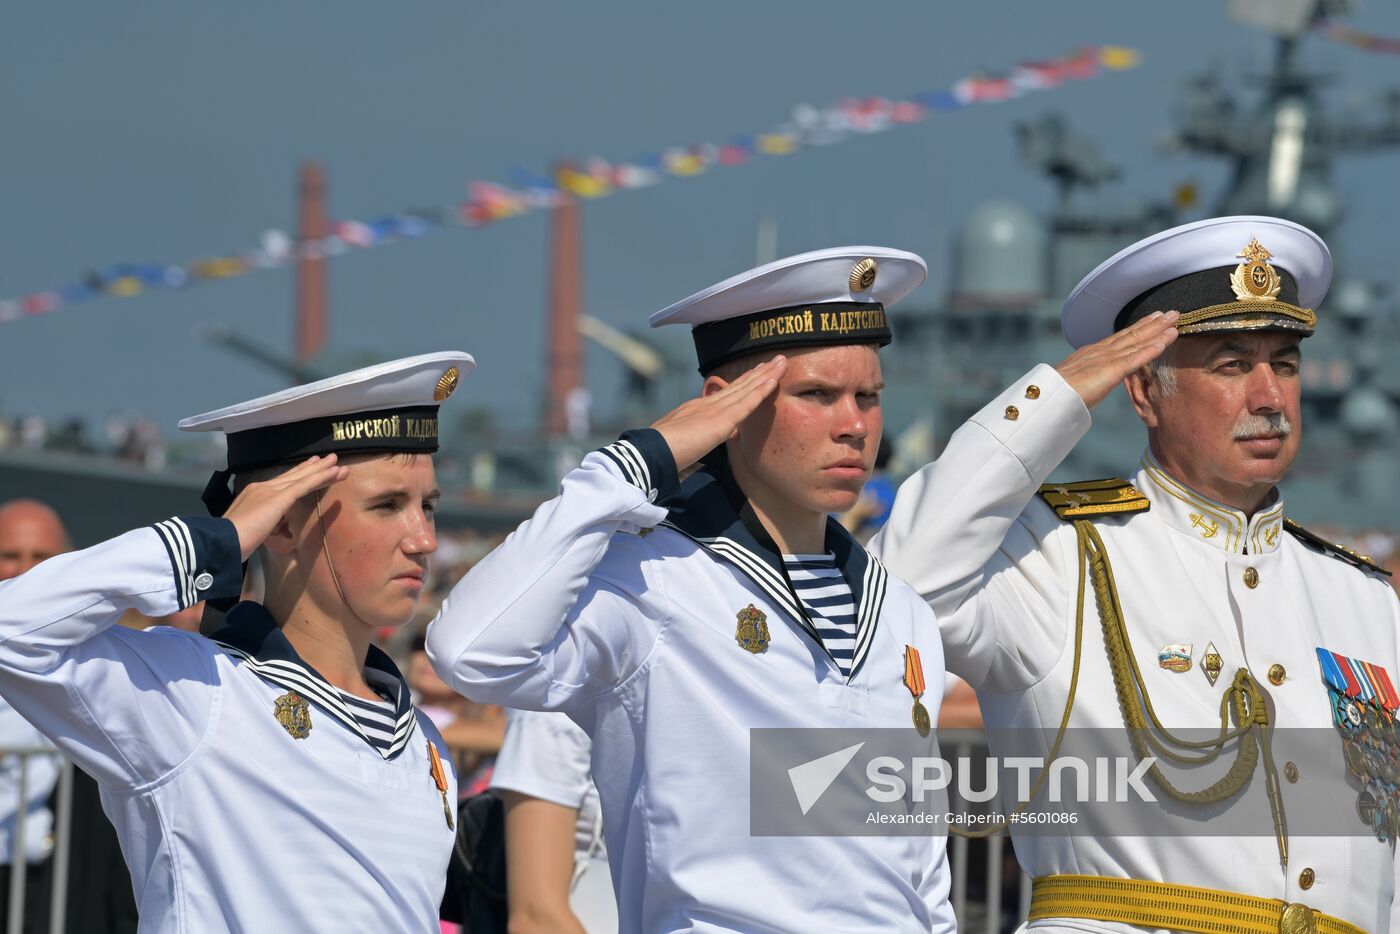 Main Naval Parade